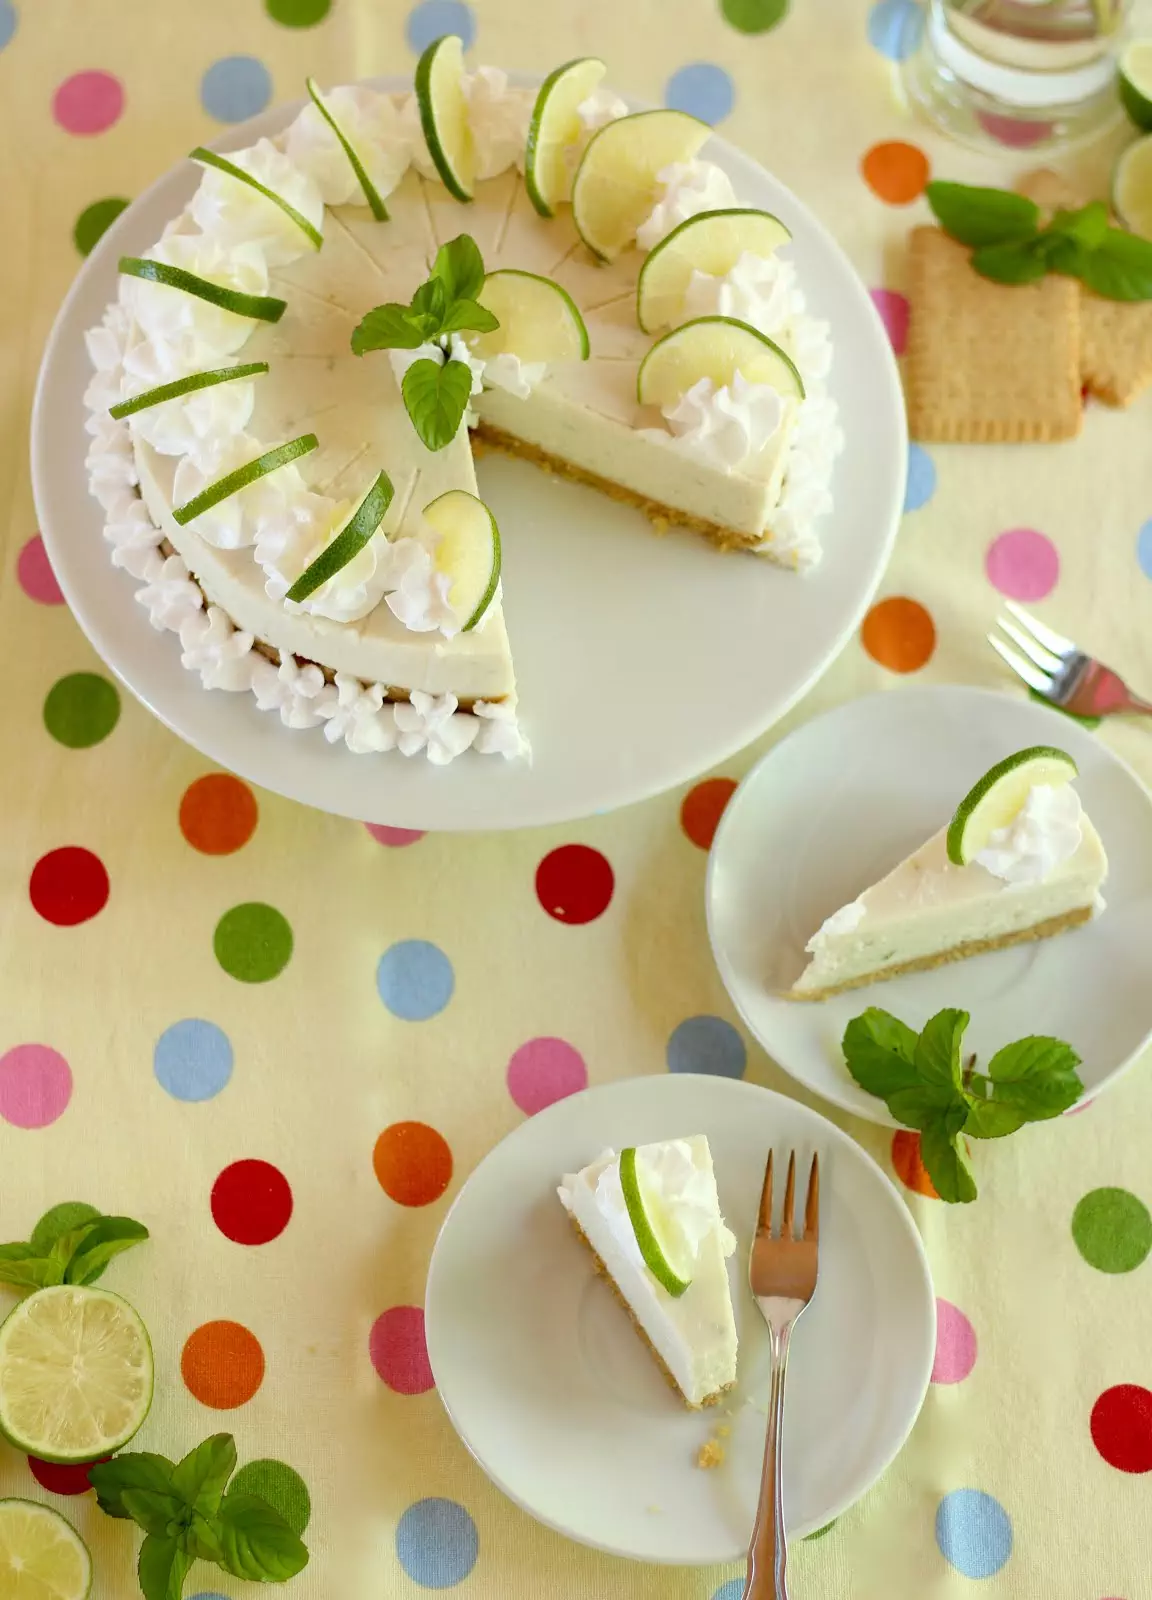 Erfrischende Limetten-Joghurt-Torte ohne Backen - klassisch und vegan | Rezept und Video